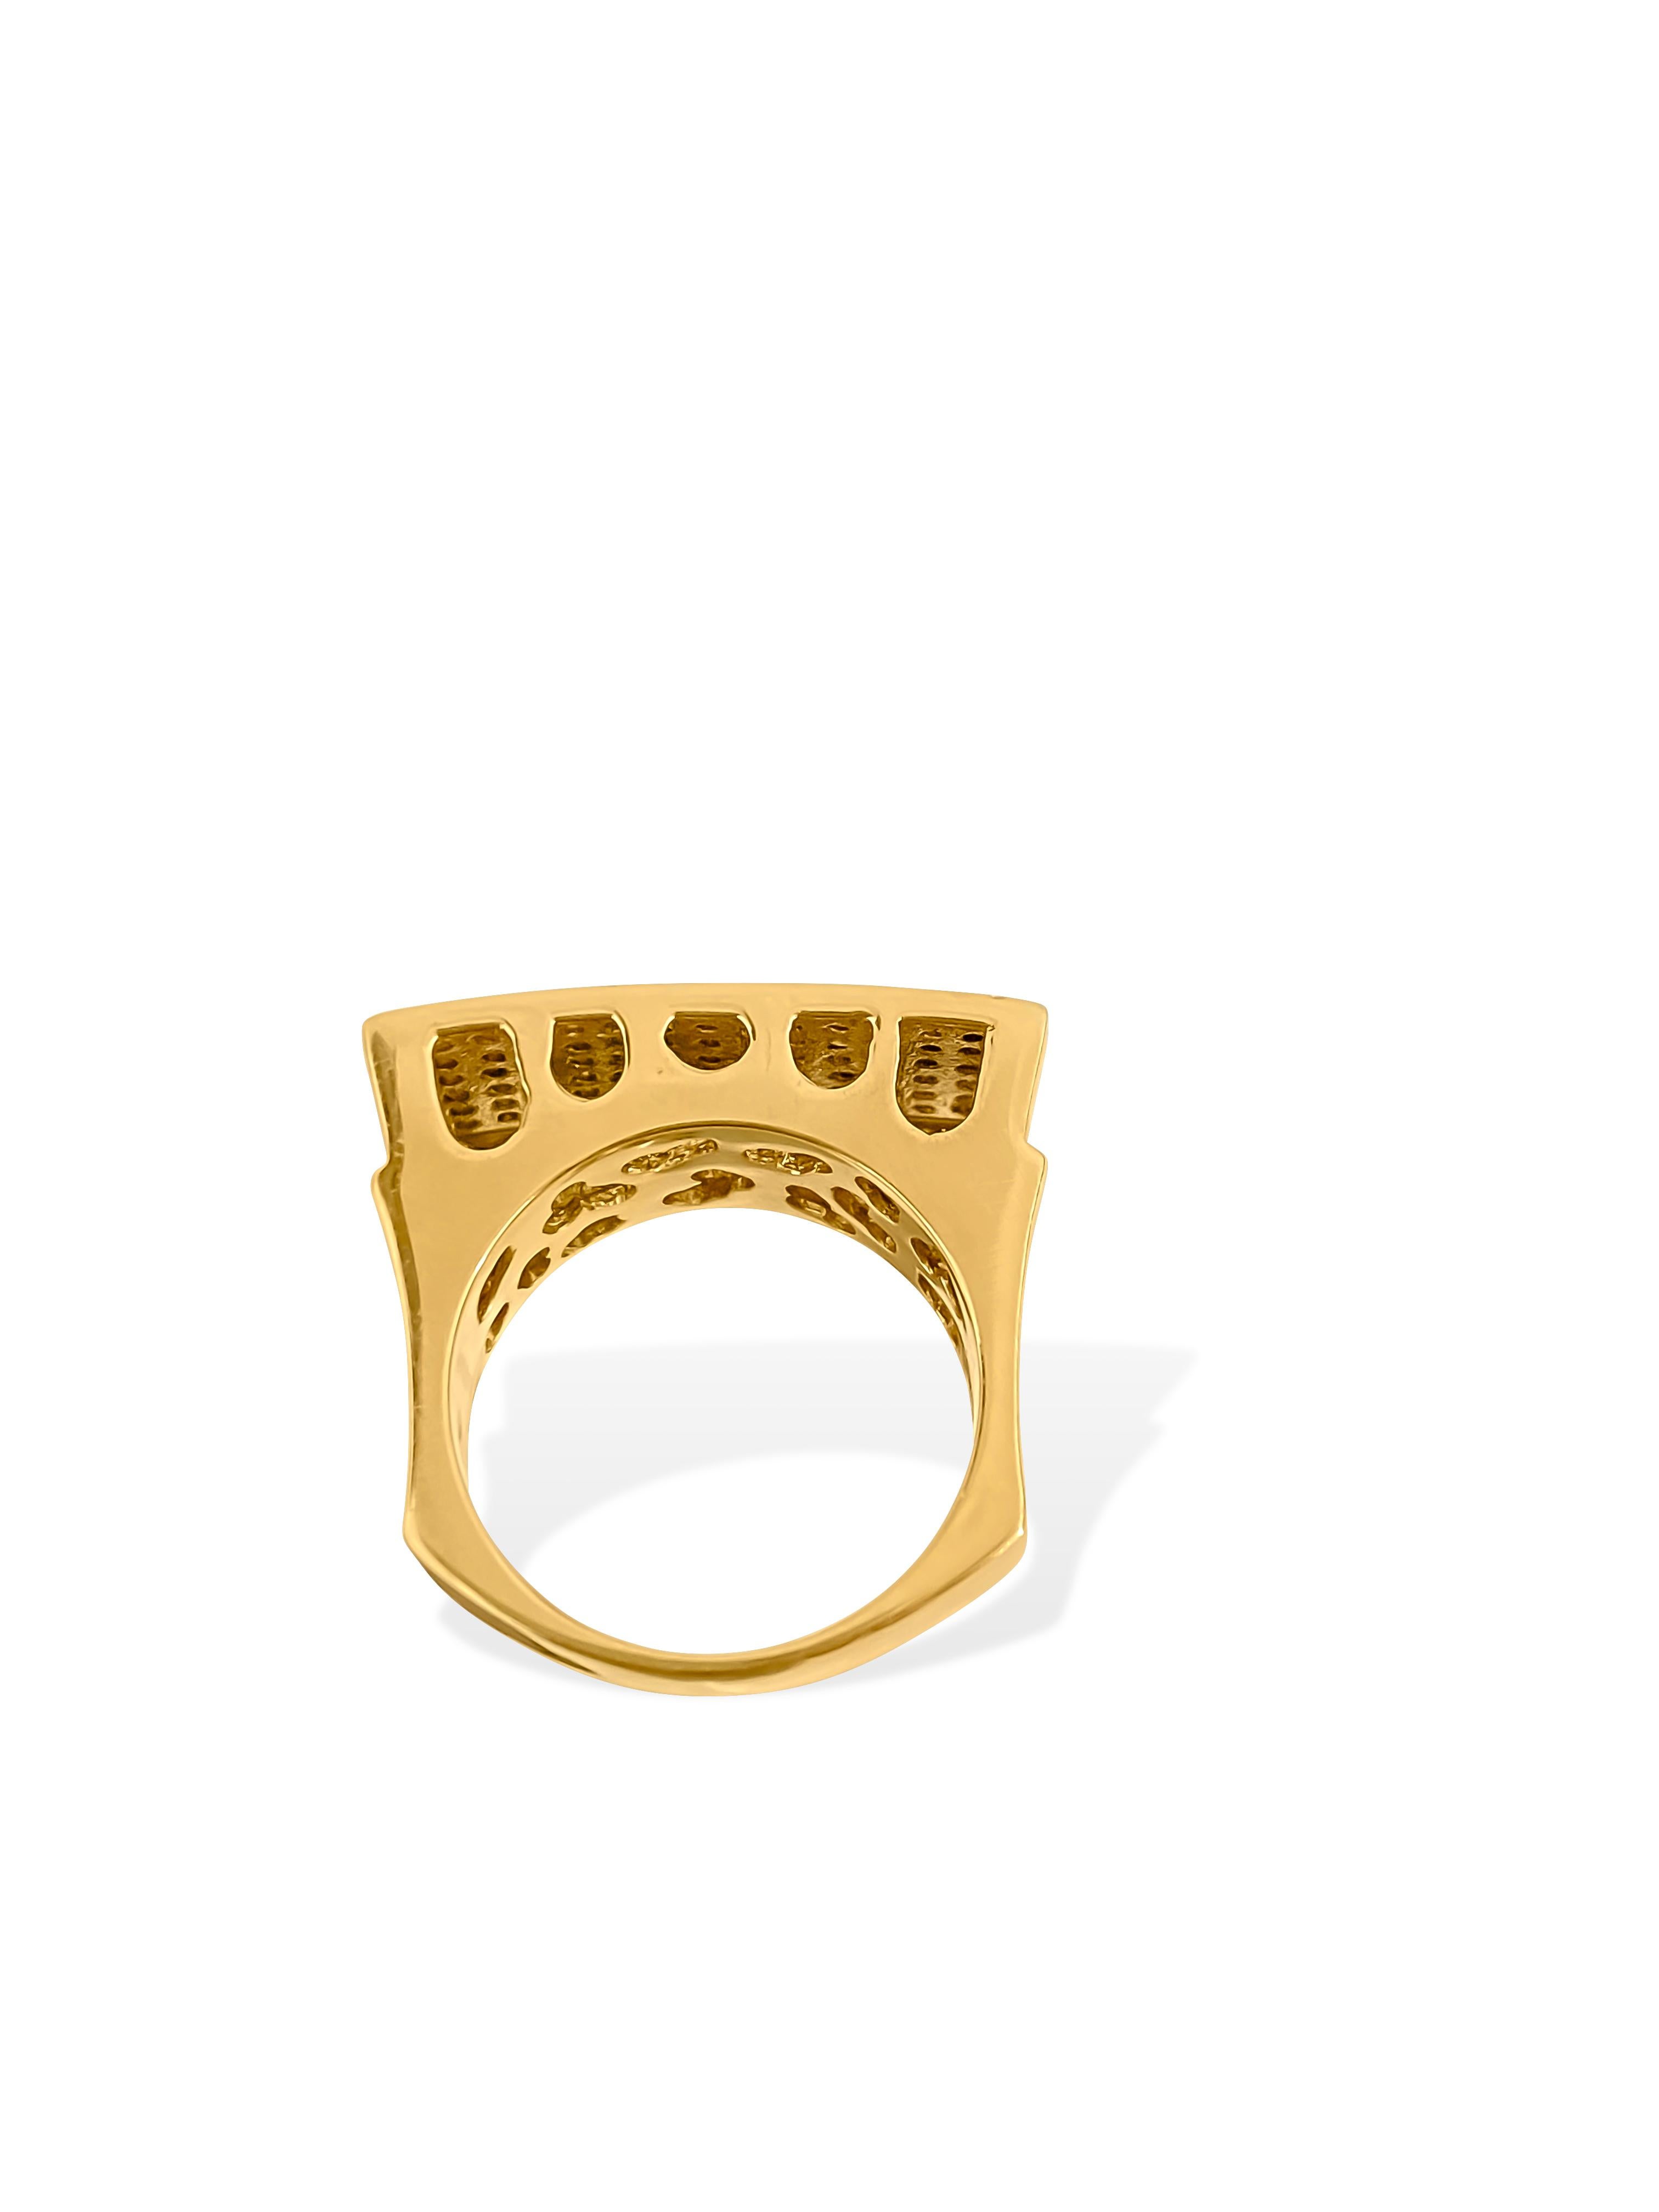 Dieser maßgefertigte Herrenring aus 18 Karat Gelbgold weist ein Gesamtkaratgewicht von 3,00 Karat weißer Diamanten auf, von denen jeder die Reinheit VS-SI und die Farbe F aufweist. In einer Perlenfassung gefasst, strahlen diese runden Diamanten im